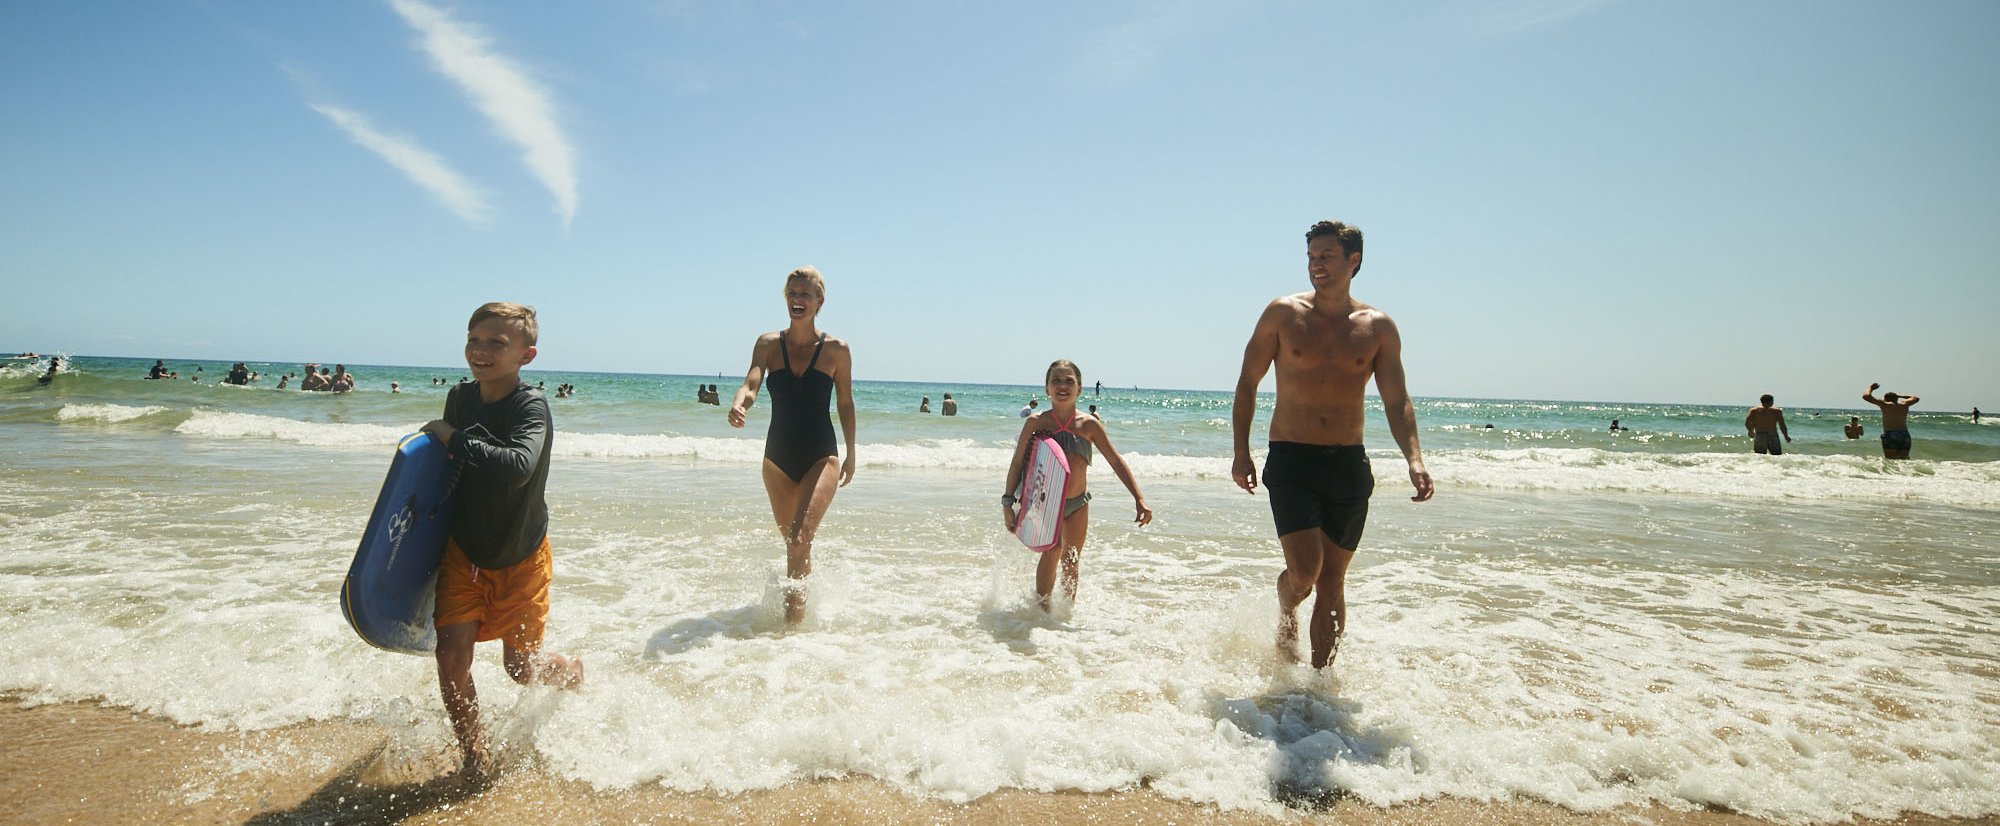 Australien Familienreise - Australien for family - Familie am Strand